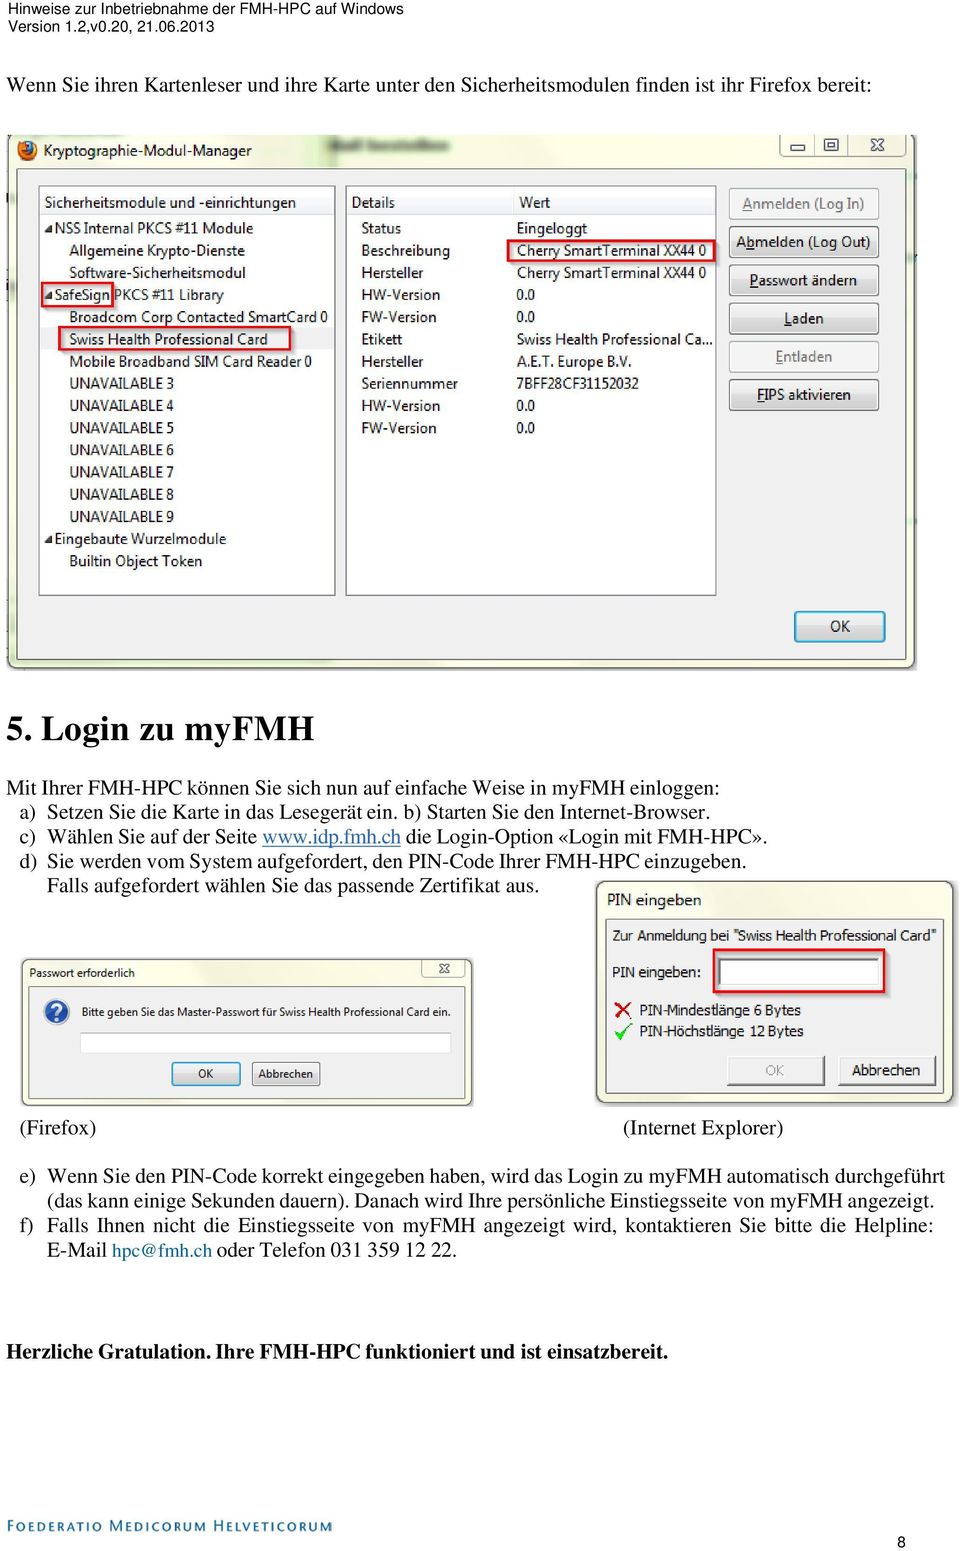 c) Wählen Sie auf der Seite www.idp.fmh.ch die Login-Option «Login mit FMH-HPC». d) Sie werden vom System aufgefordert, den PIN-Code Ihrer FMH-HPC einzugeben.